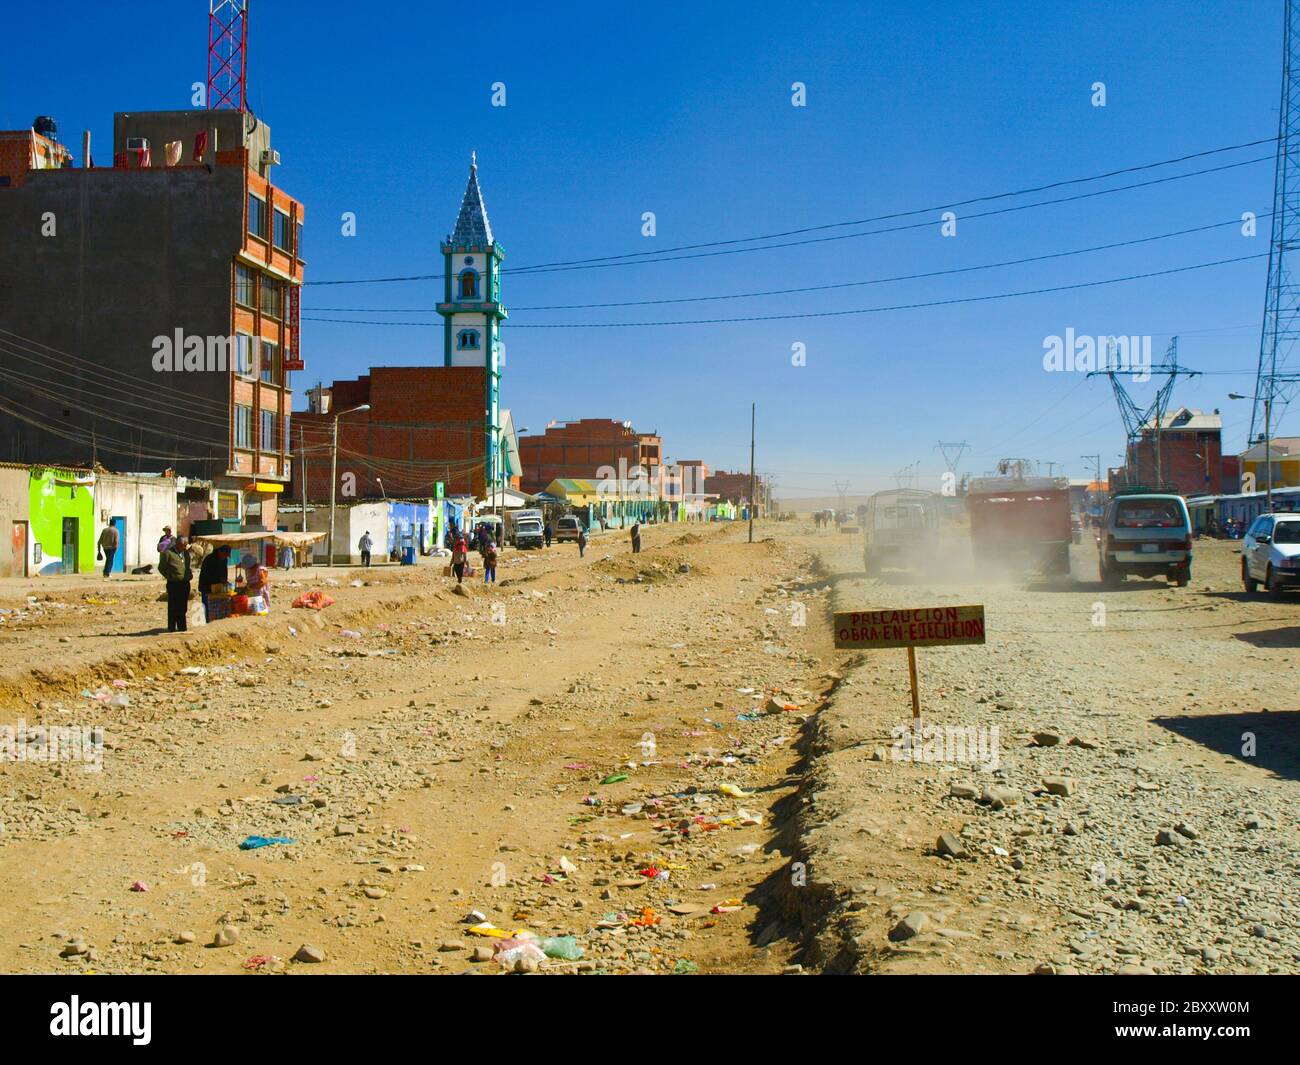 Staubige Straße und neue Kirche an sonnigen Tagen, El Alto, La Paz, Bolivien Stockfoto